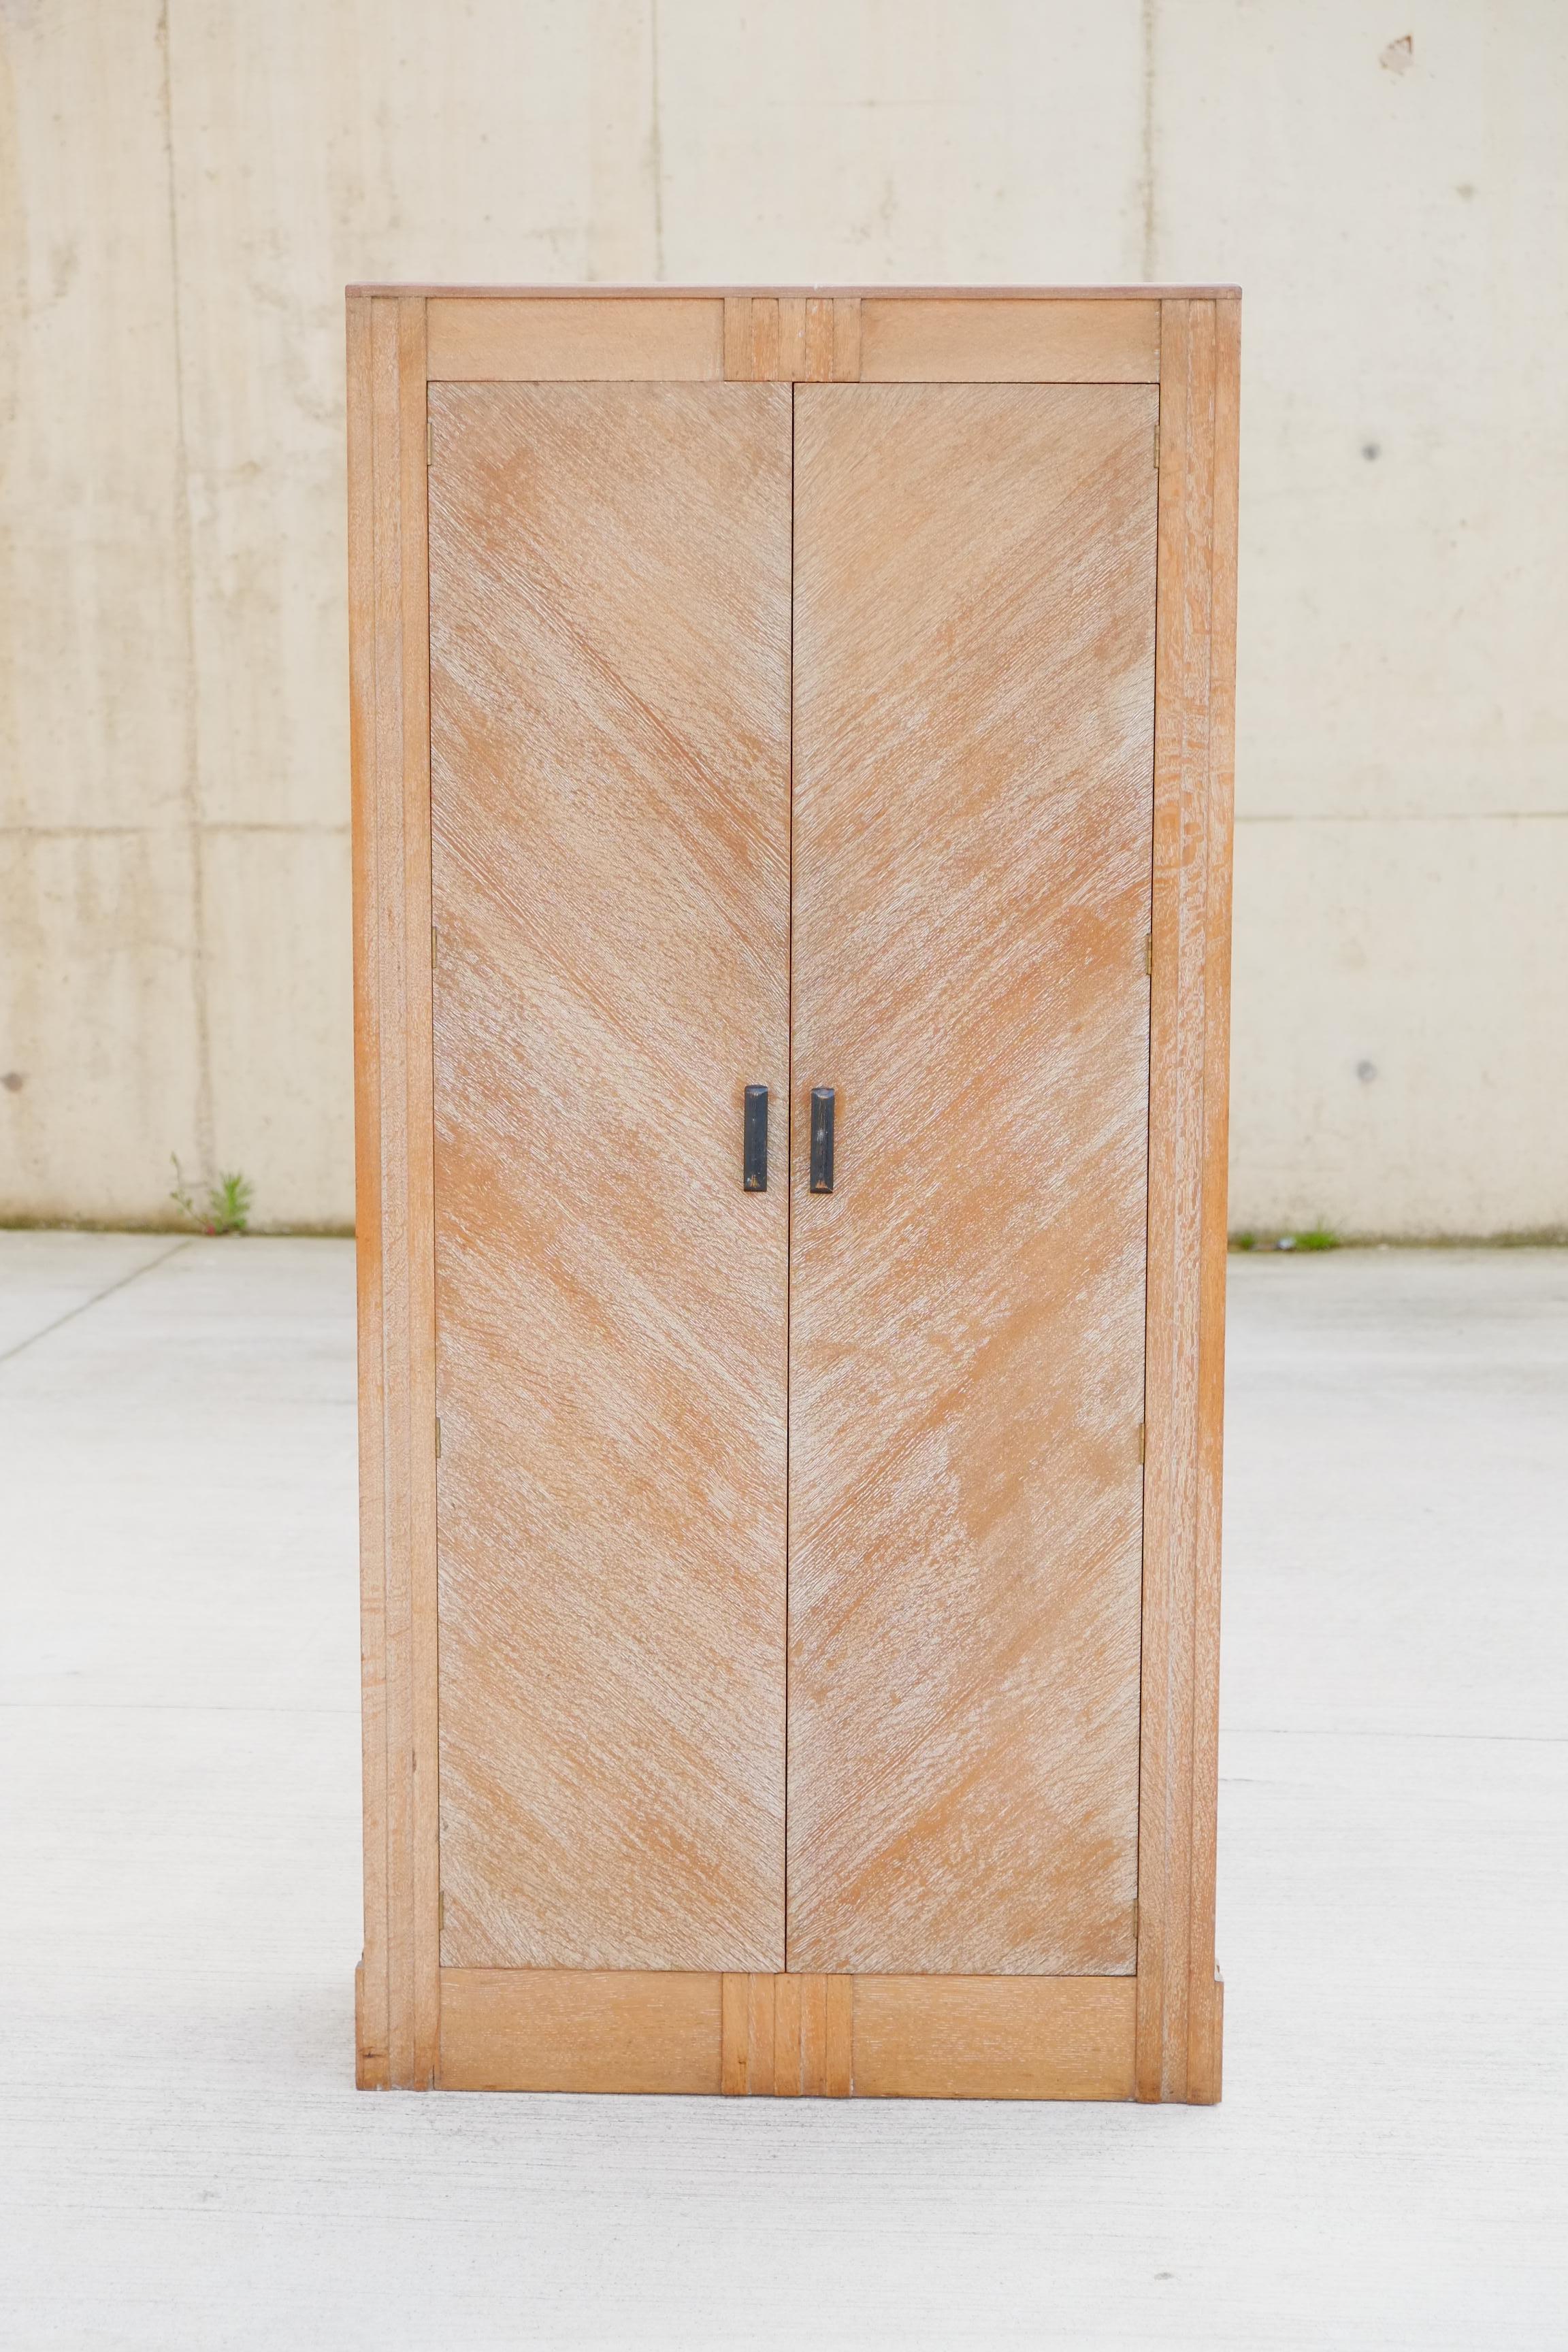 Superbe armoire Art Déco réalisée par les ébénistes anglais Hypnos. L'armoire est fabriquée en chêne massif avec une finition à la cire de chaux. Les portes en chêne sont étonnantes avec leur design en diagonale. Décoration Art déco subtile dans